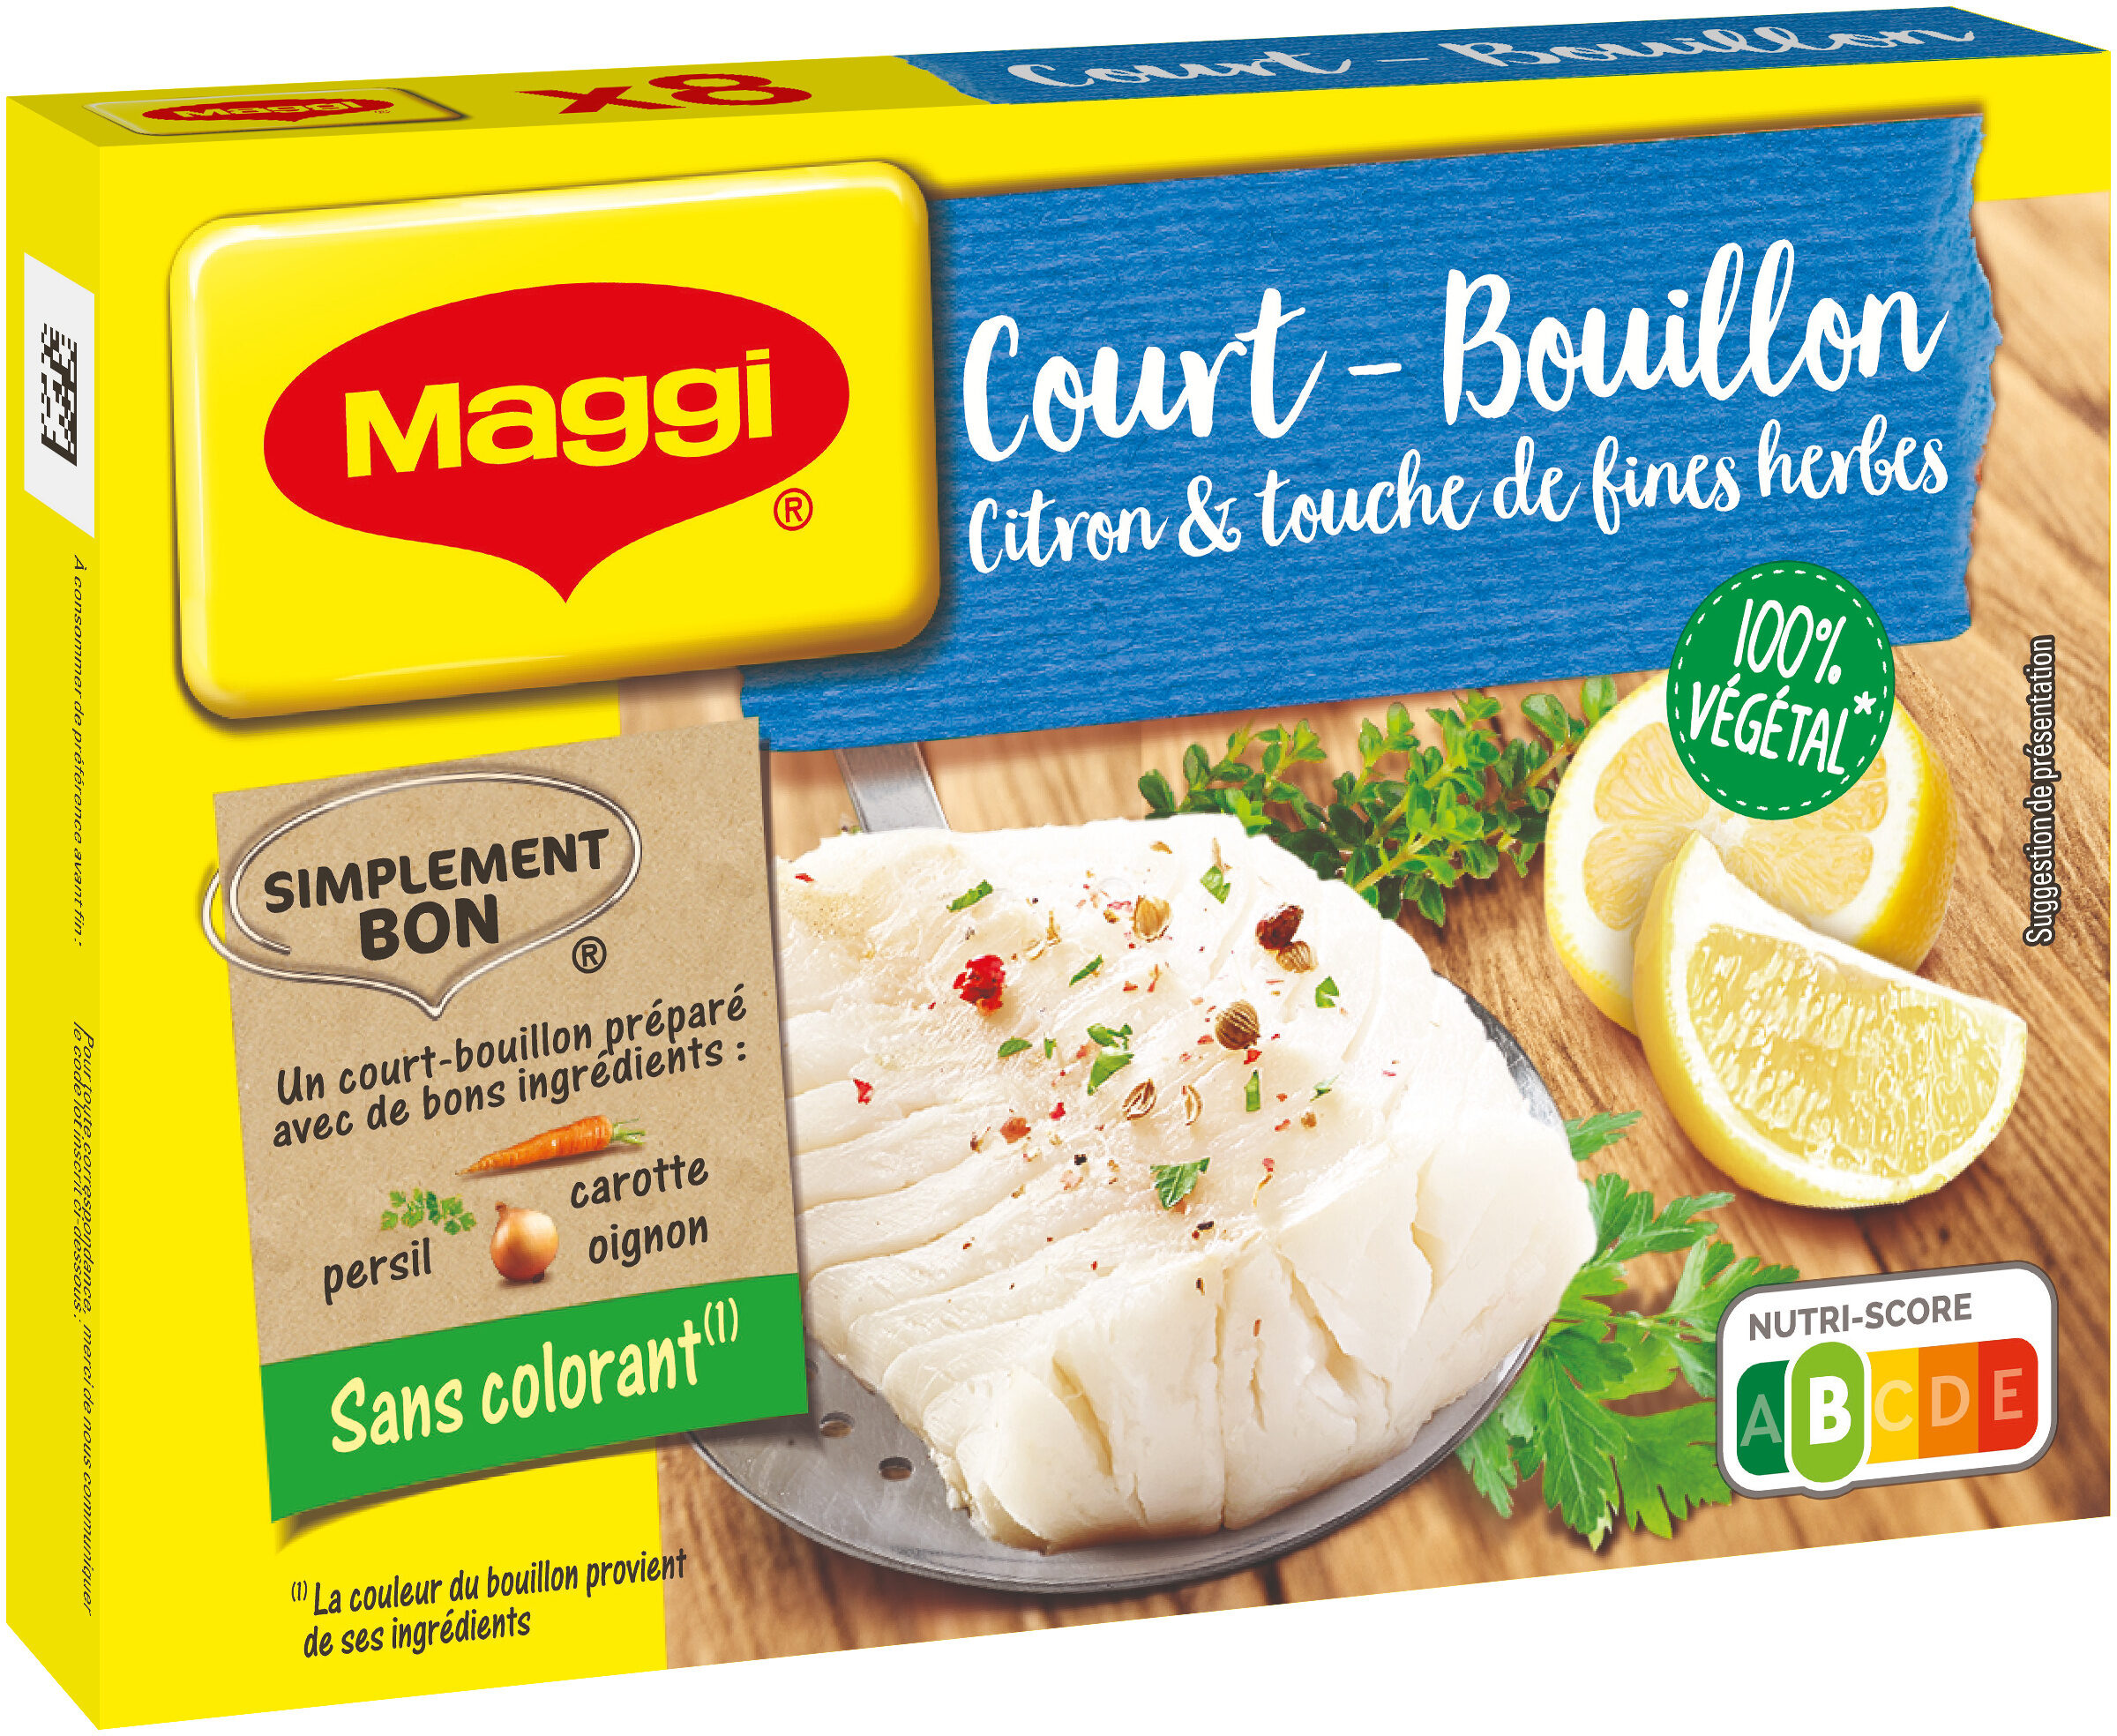 MAGGI Court Bouillon Citron et Fines Herbes 8 tablettes, 89,6g - Product - fr